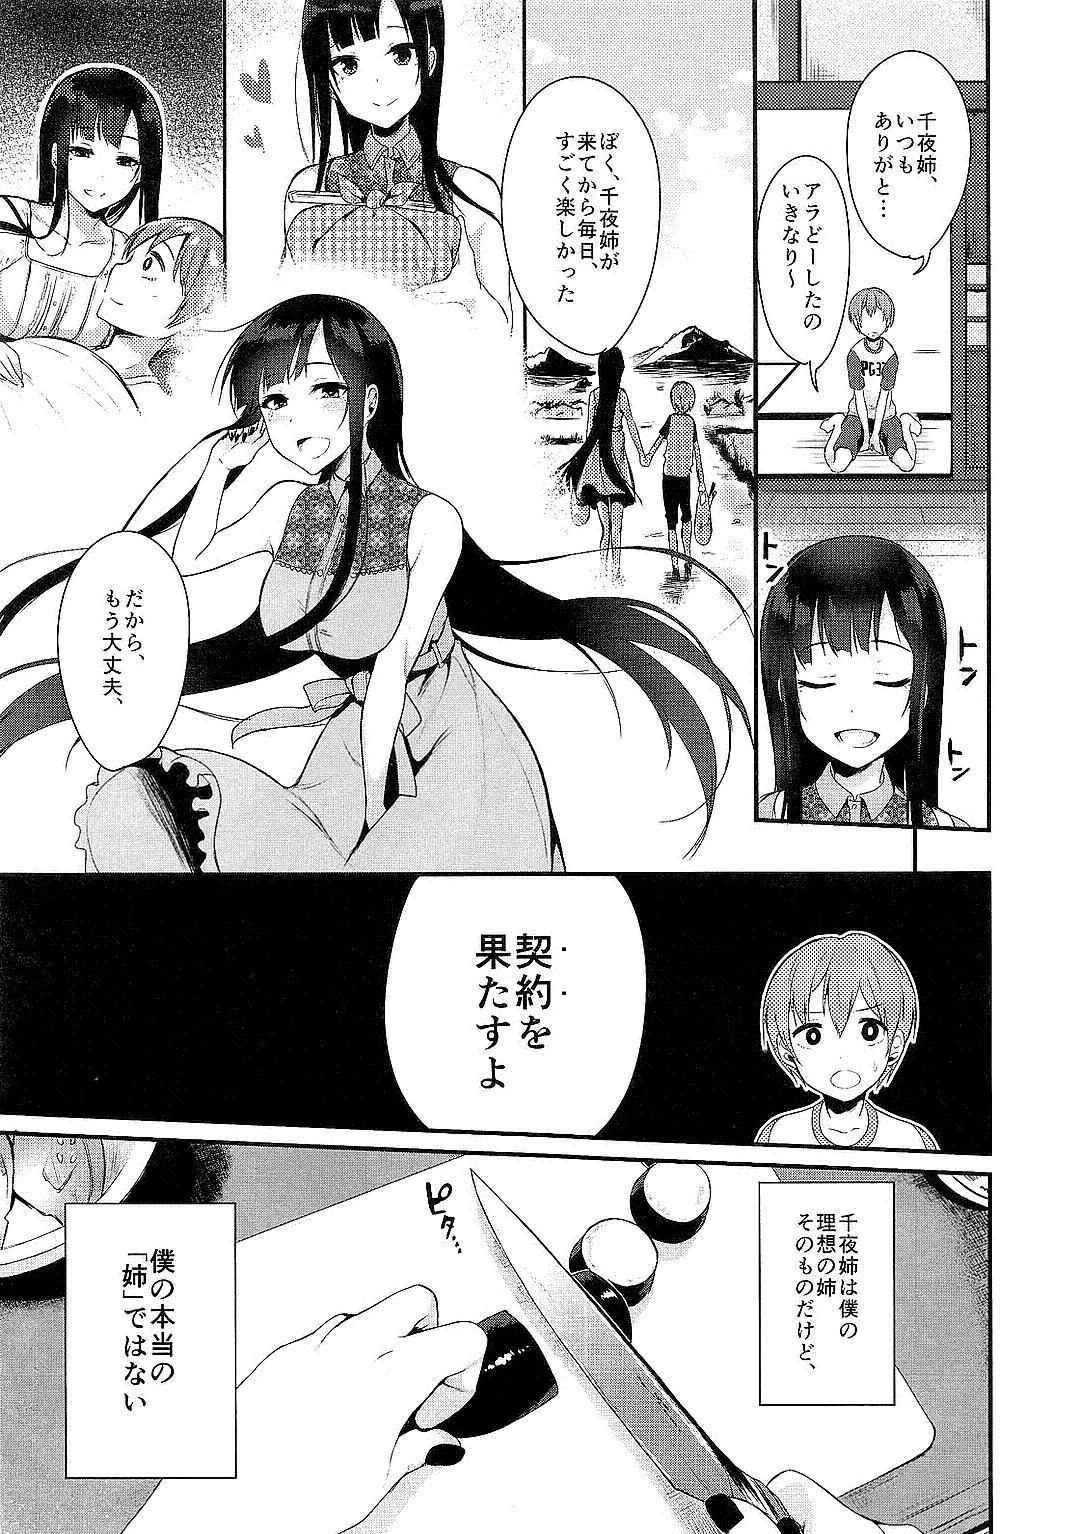 Rough Ane Naru Mono Zenshuu 1 - Ane naru mono Boobies - Page 9